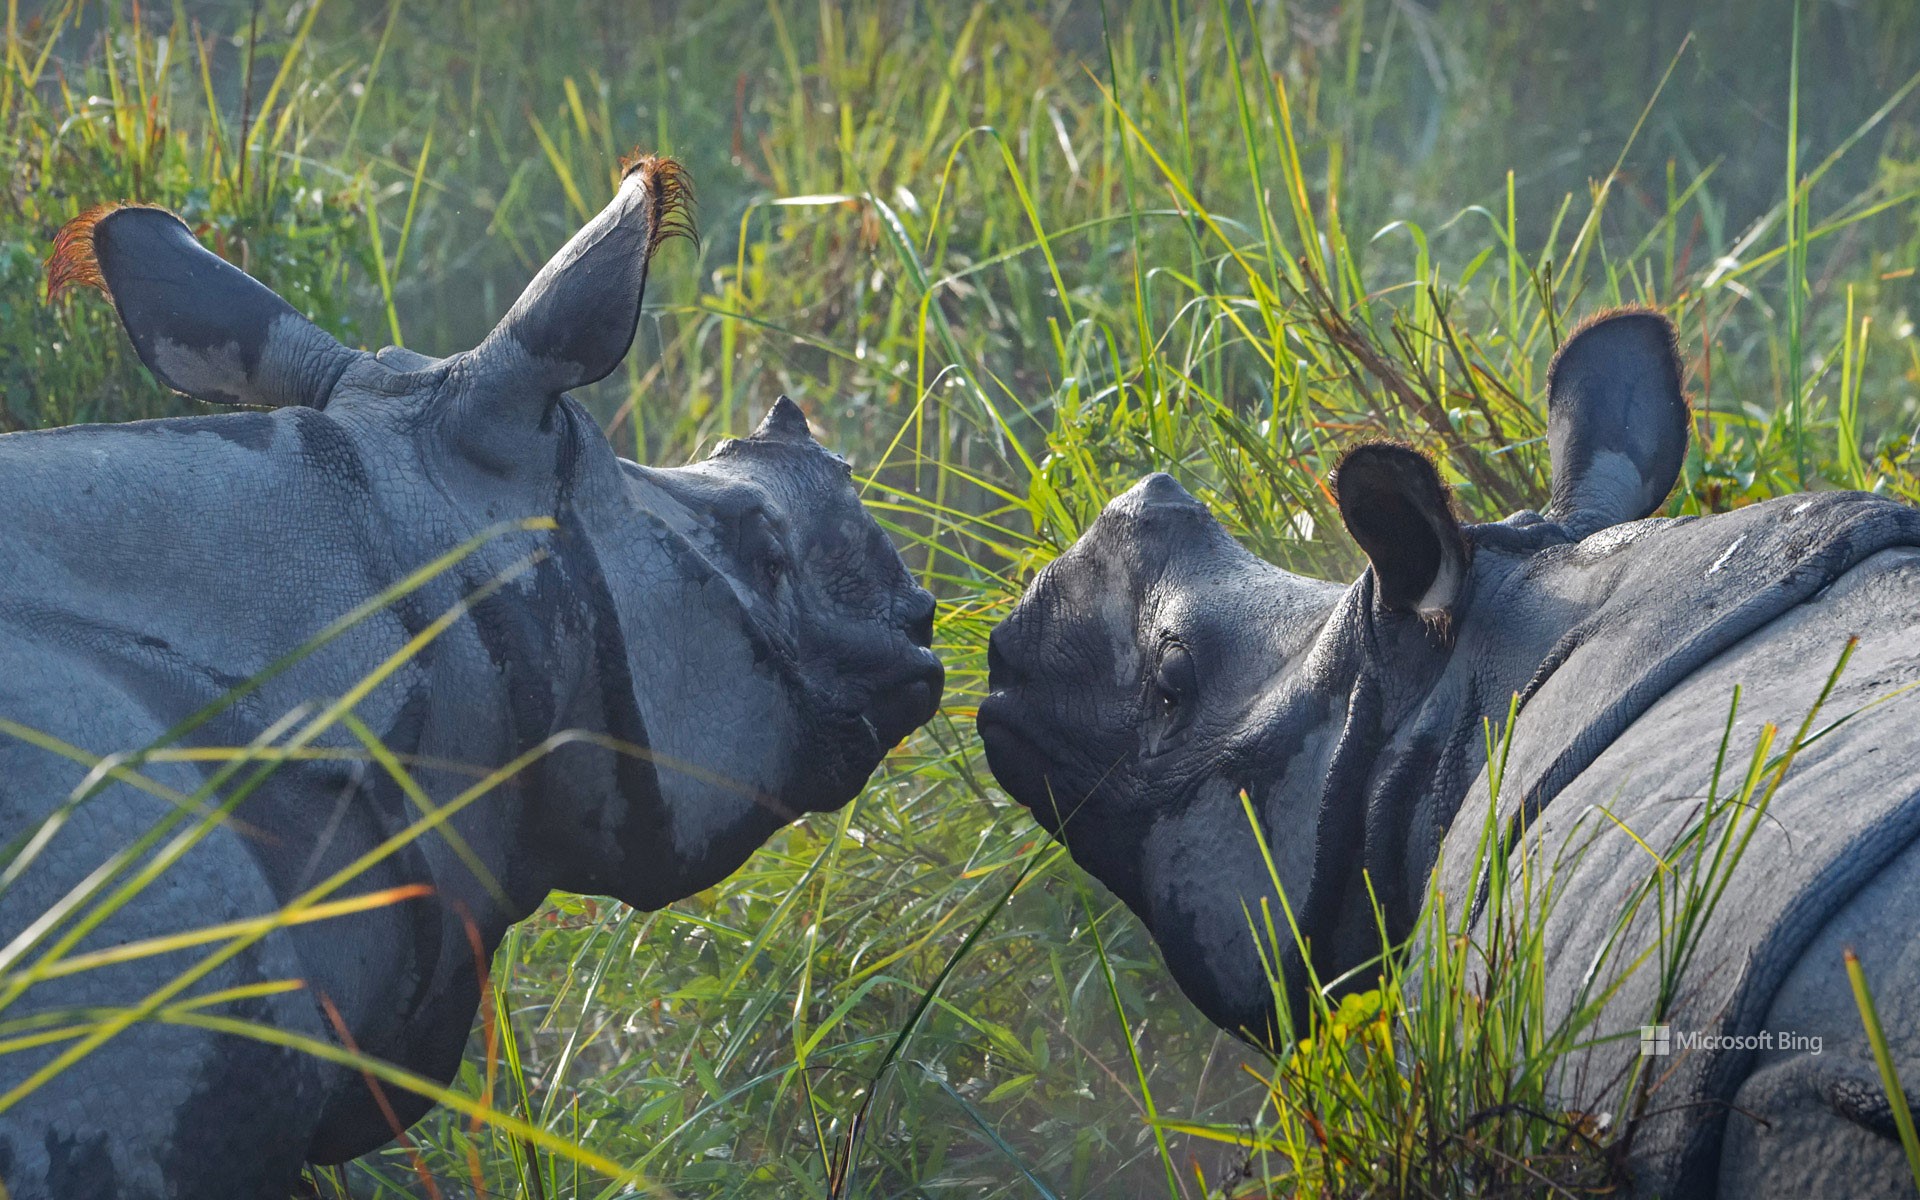 Greater one-horned rhinoceroses, Kaziranga National Park, Assam, India